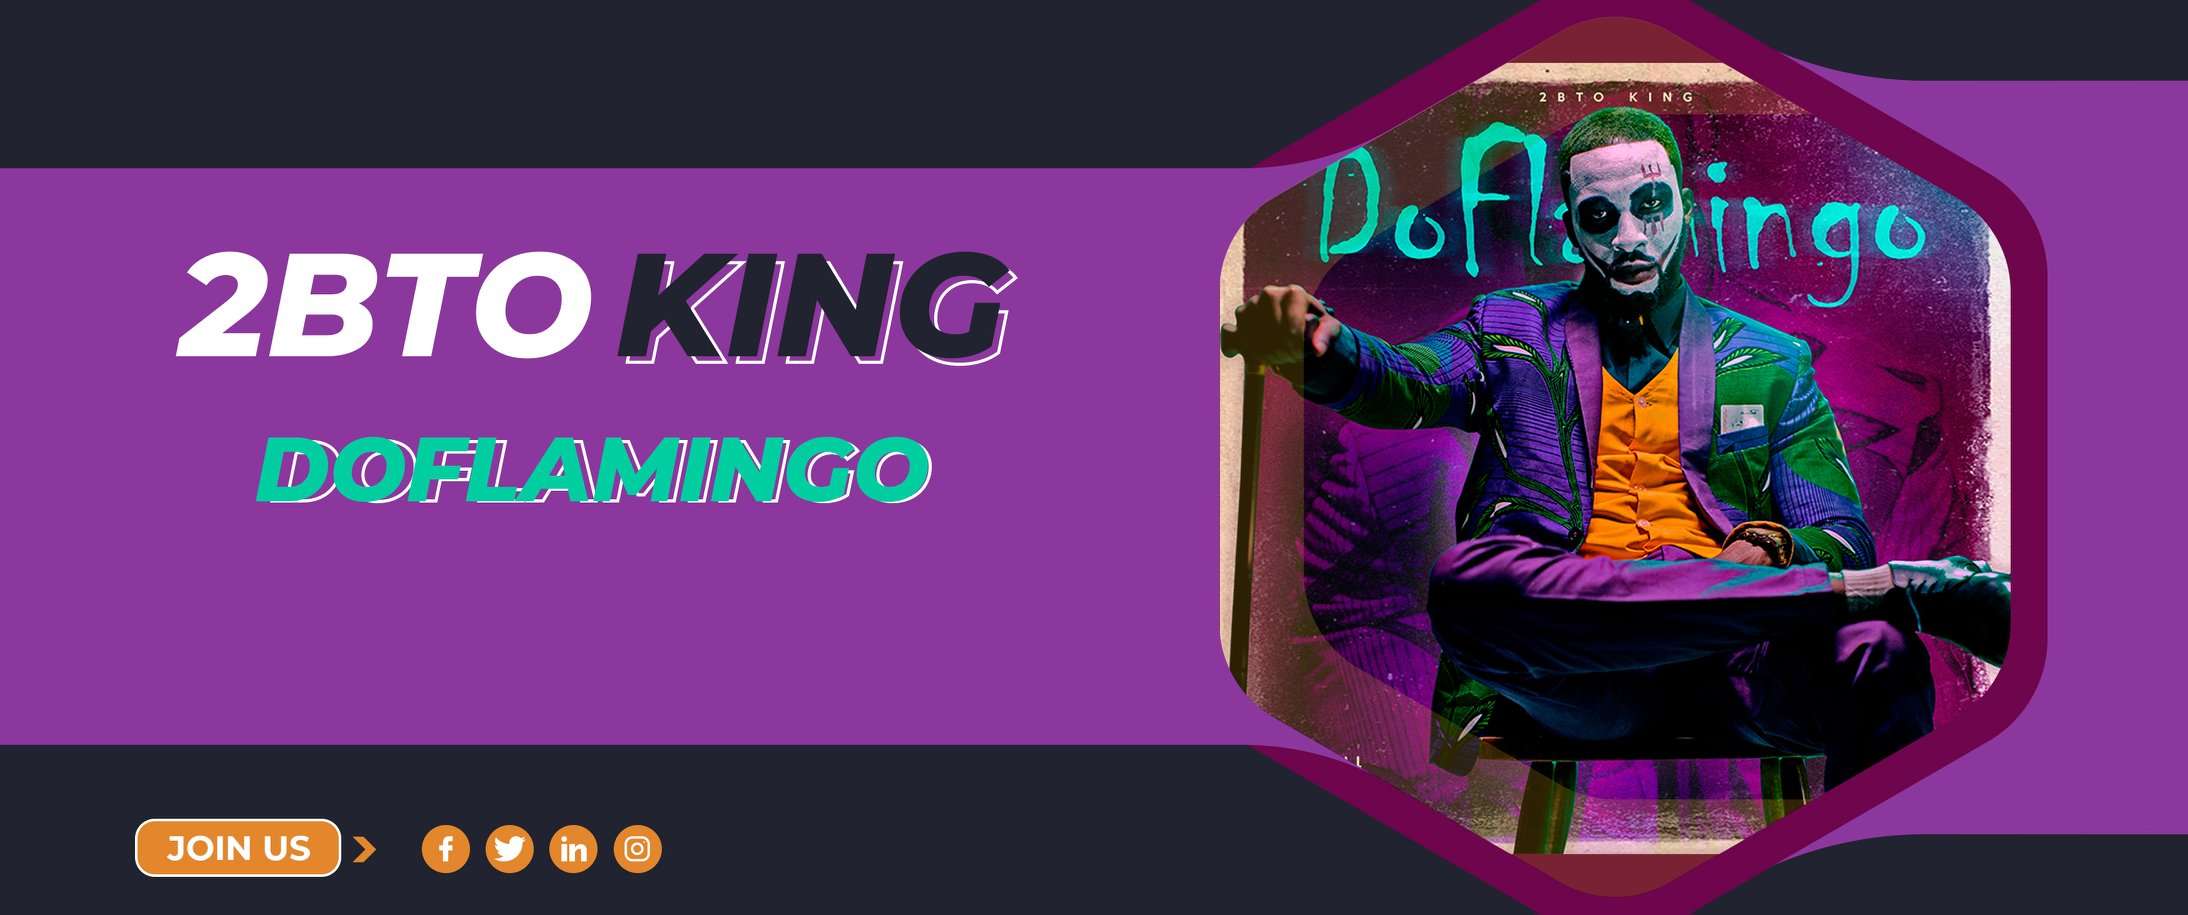 2BTO KING - Doflamingo